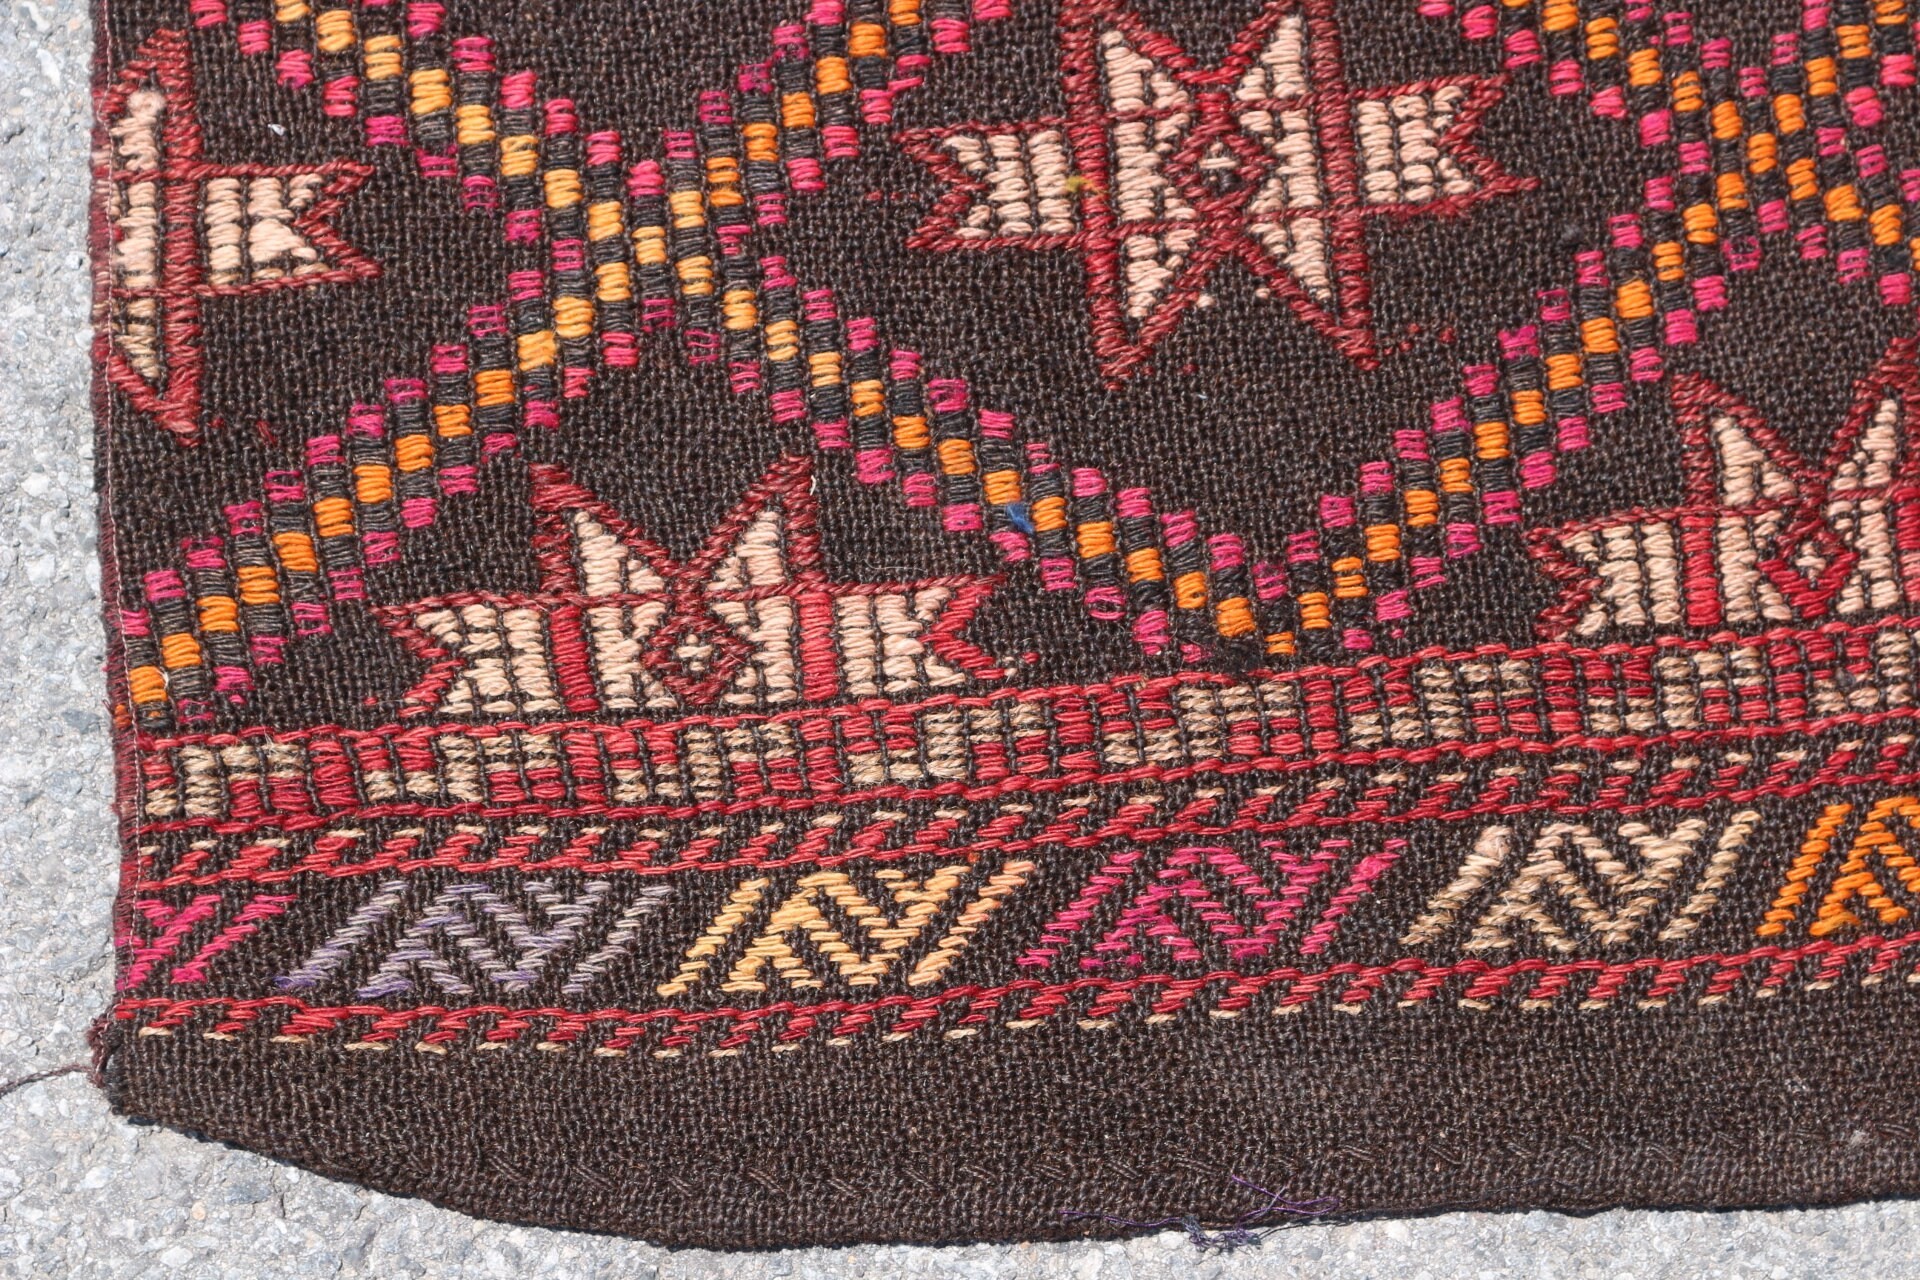 Kilim, Wool Rug, Turkish Rugs, Moroccan Rugs, Bedroom Rug, Vintage Rug, Boho Rug, 2.5x6.2 ft Accent Rugs, Entry Rugs, Black Cool Rugs